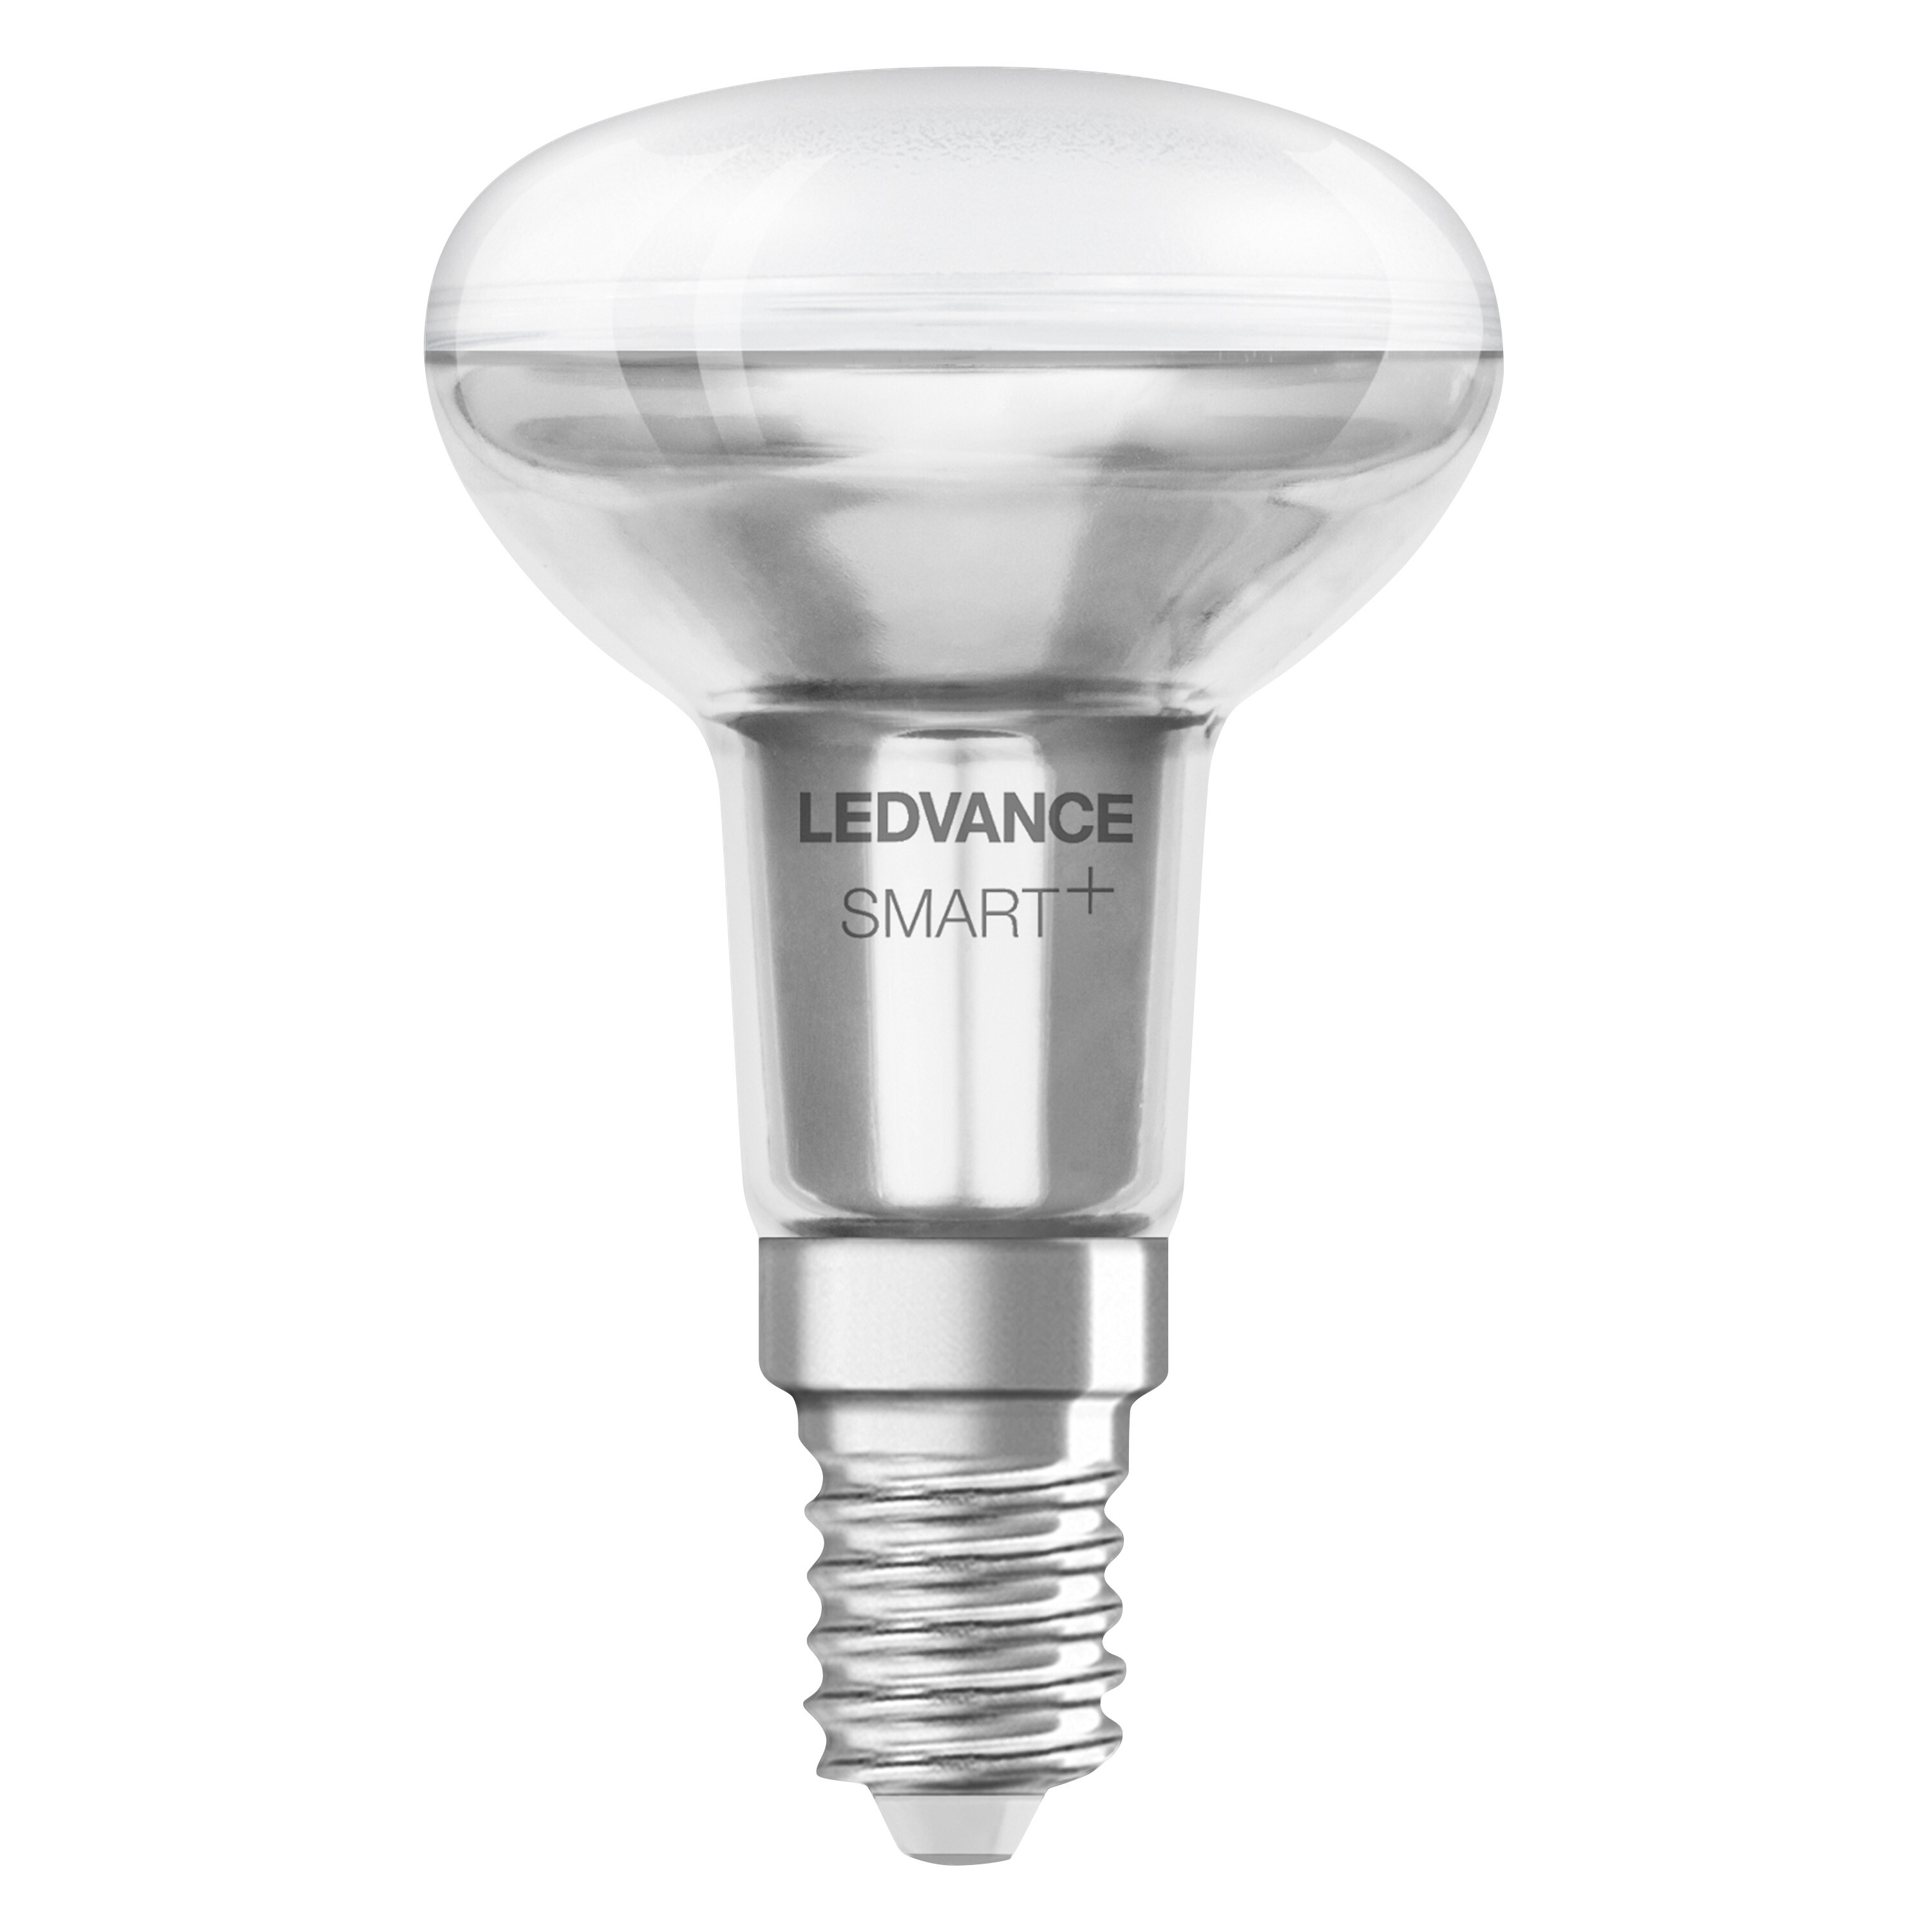 LEDVANCE SMART+ SPOT CONCENTRA R50 Lichtfarbe 3W E14 Multicolor Lampe änderbar LED Multicolor 40